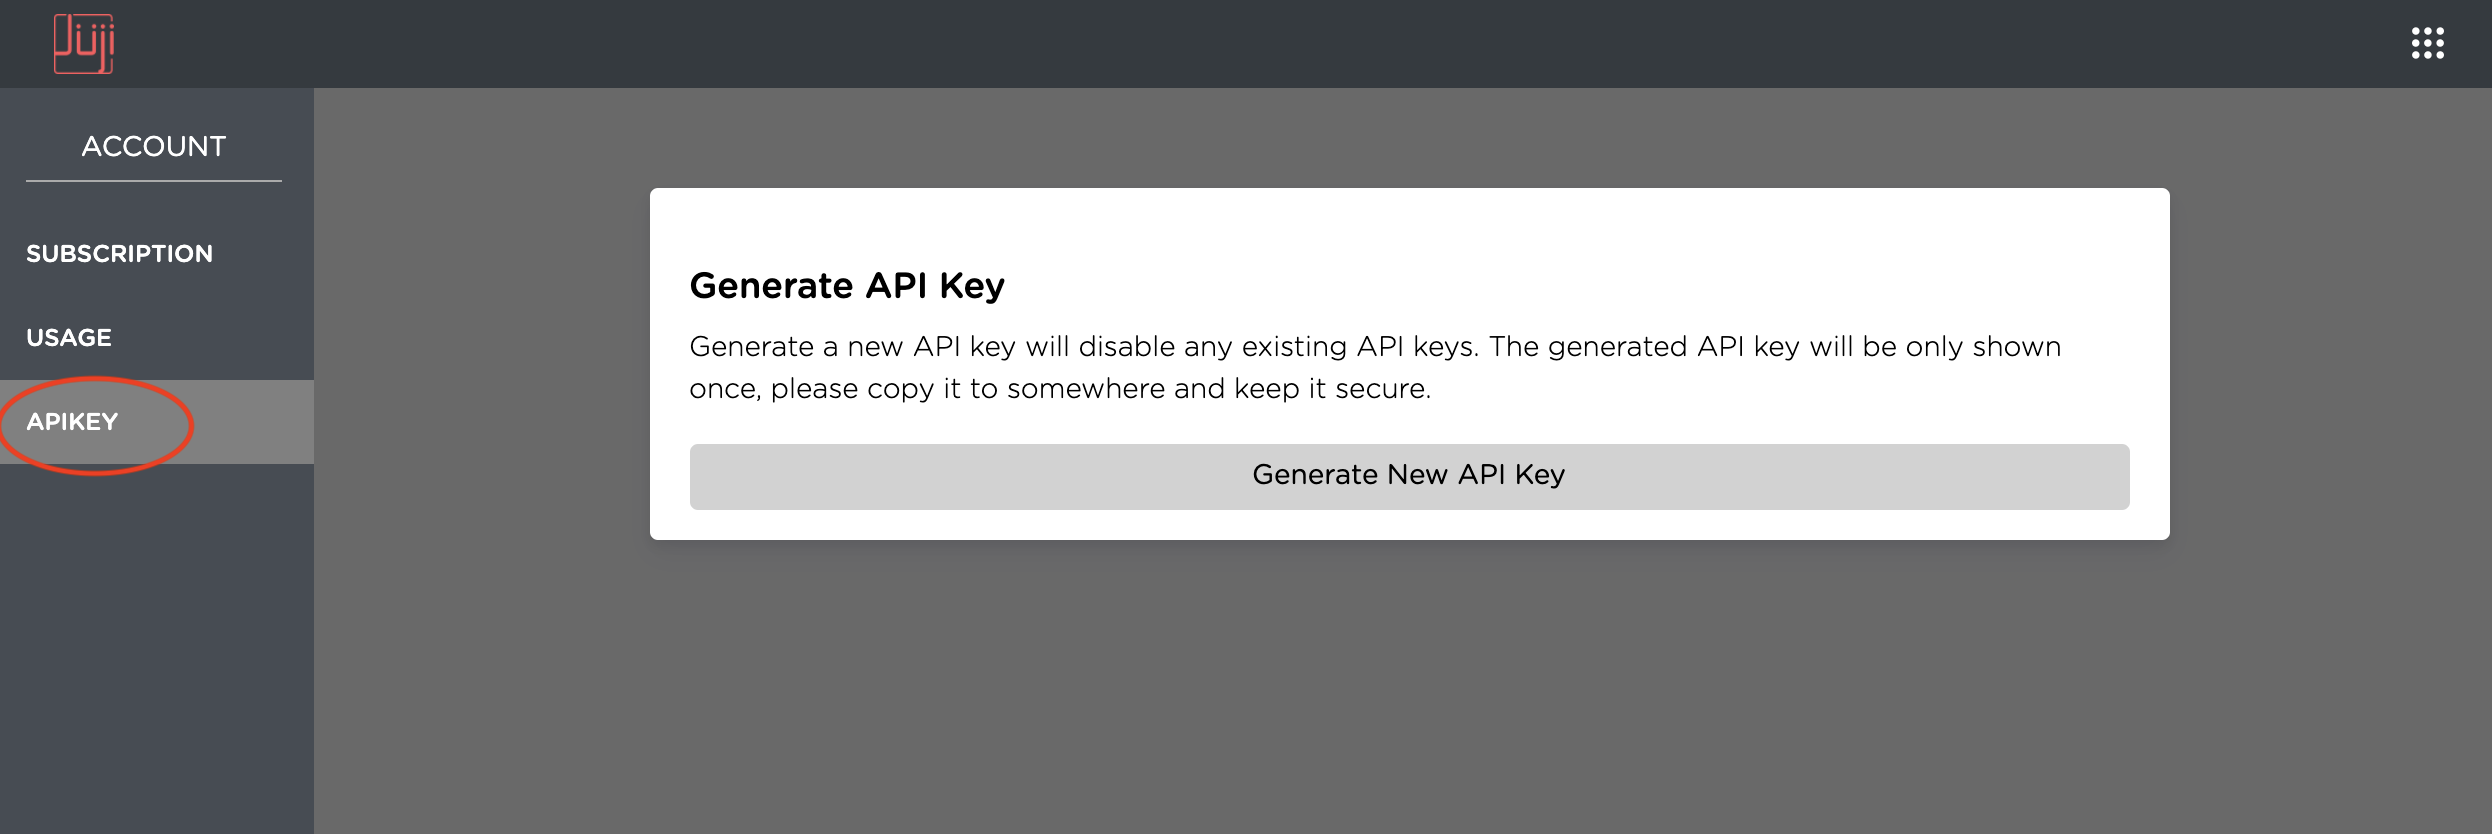 Generate New API Key